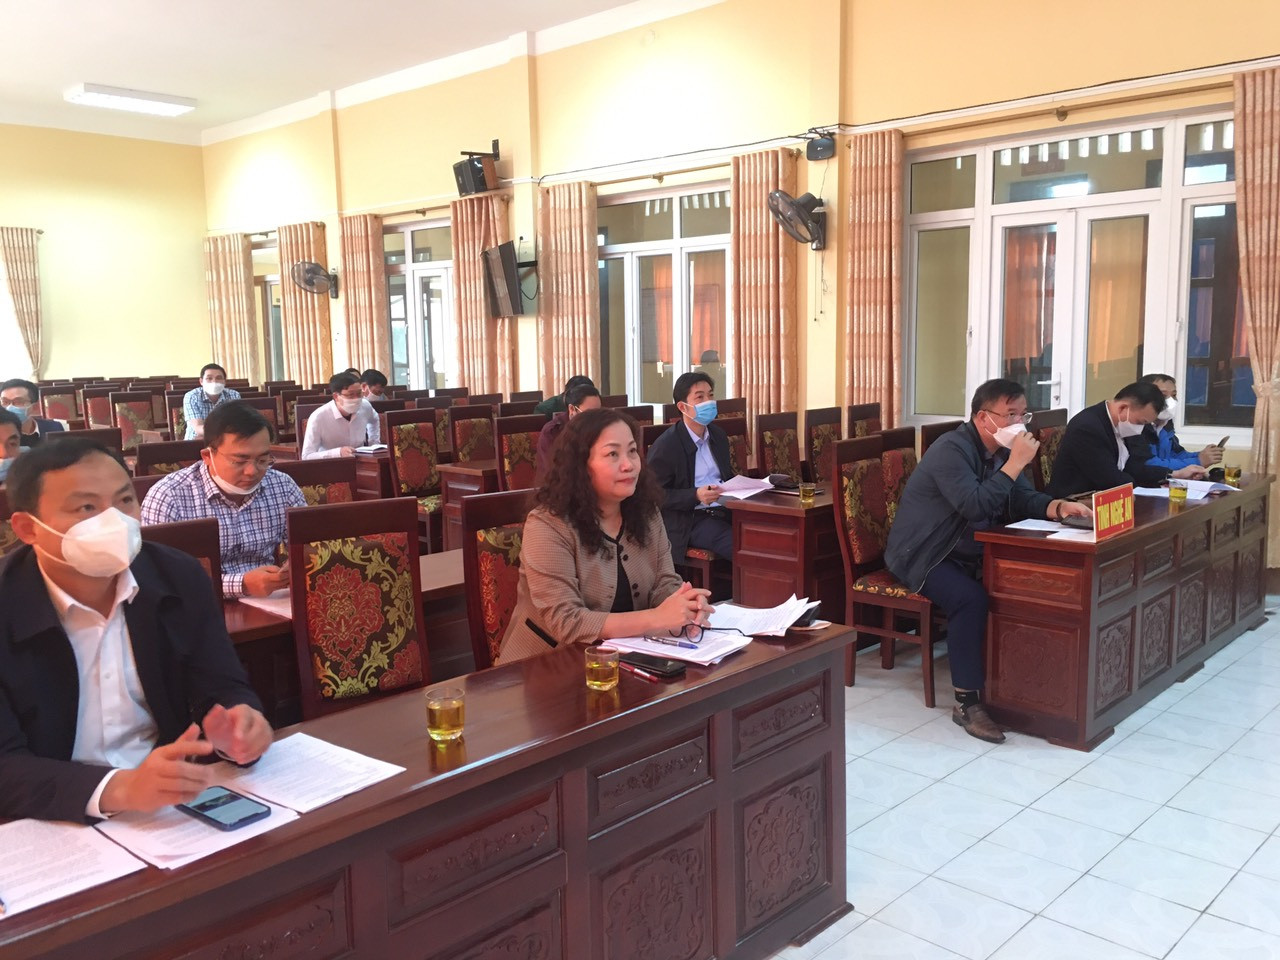 Tại điểm cầu tỉnh Nghệ An do đồng chí Nguyễn Thị Thu Hường, Ủy viên Ban Thường vụ, Trưởng Ban Tuyên giáo Tỉnh ủy chủ trì